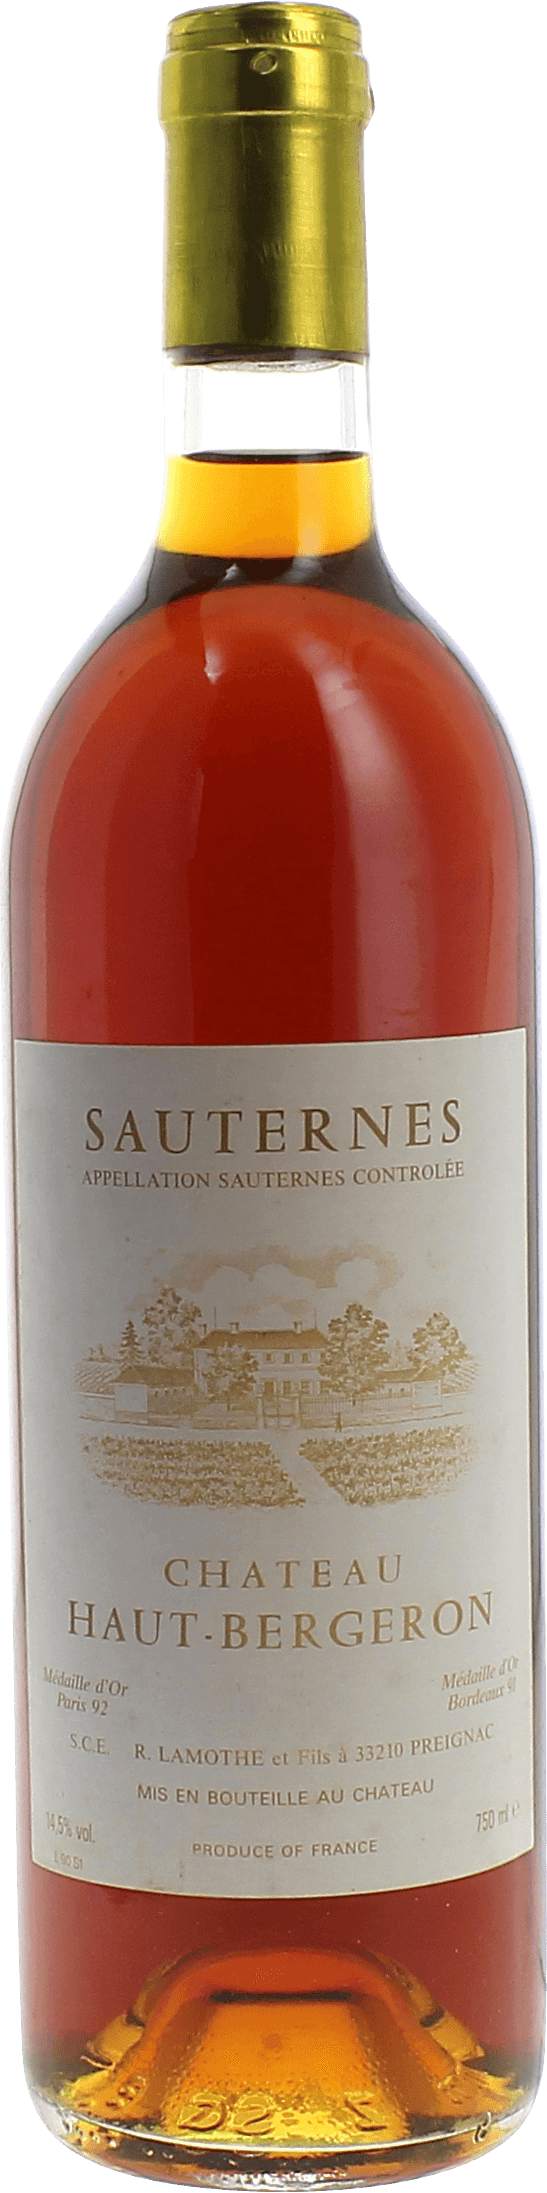 Haut bergeron 2002  Sauternes, Bordeaux blanc